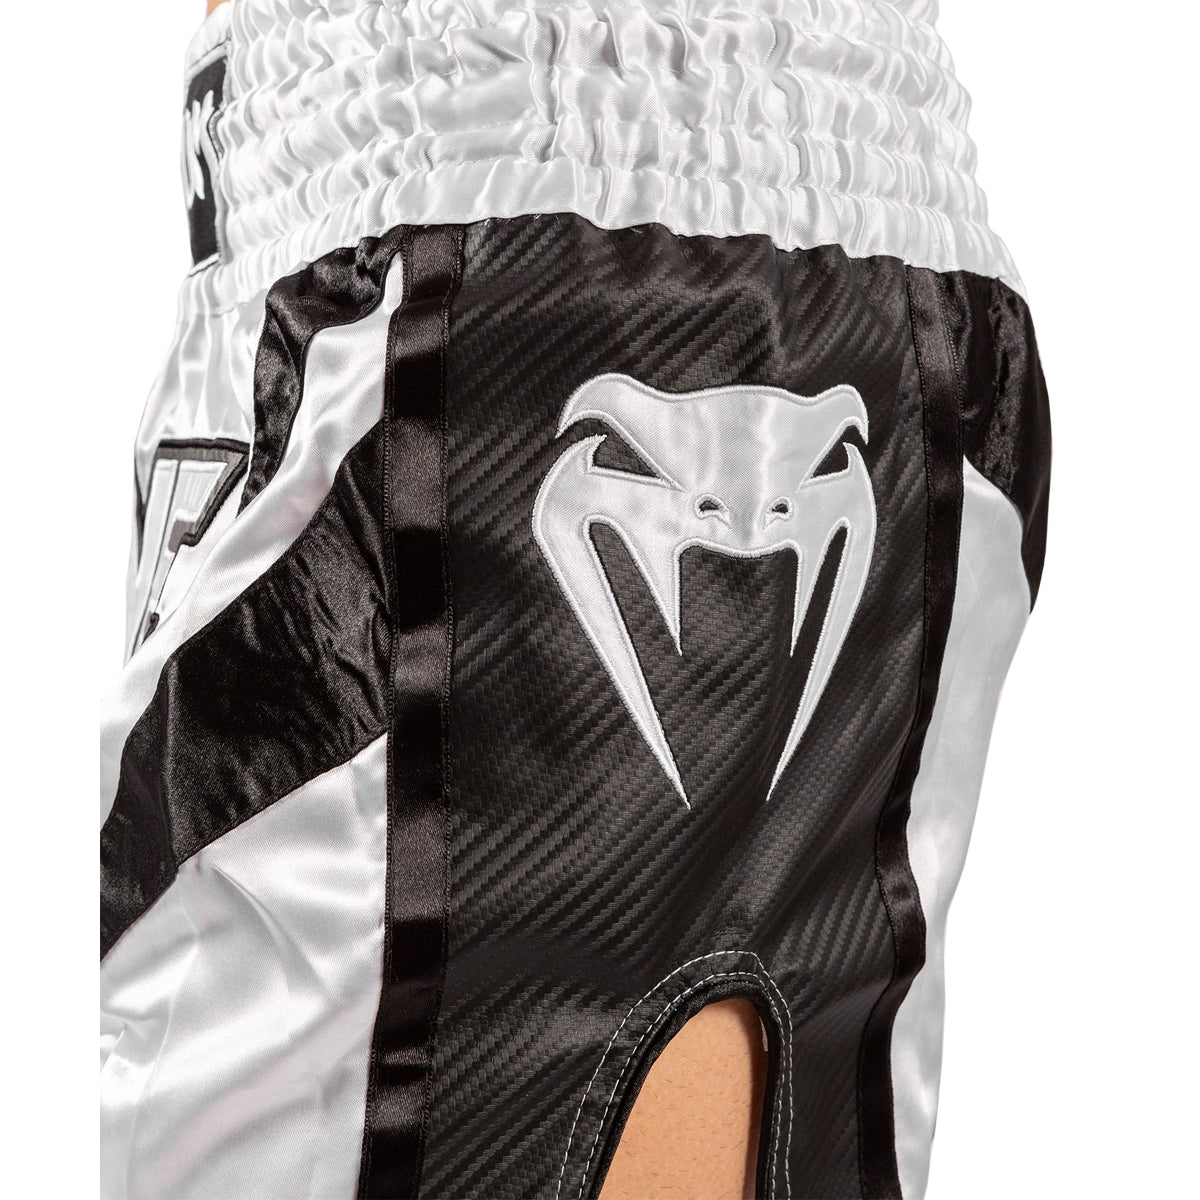 Venum One FC 3.0 Muay Thai Shorts - White/Black Venum